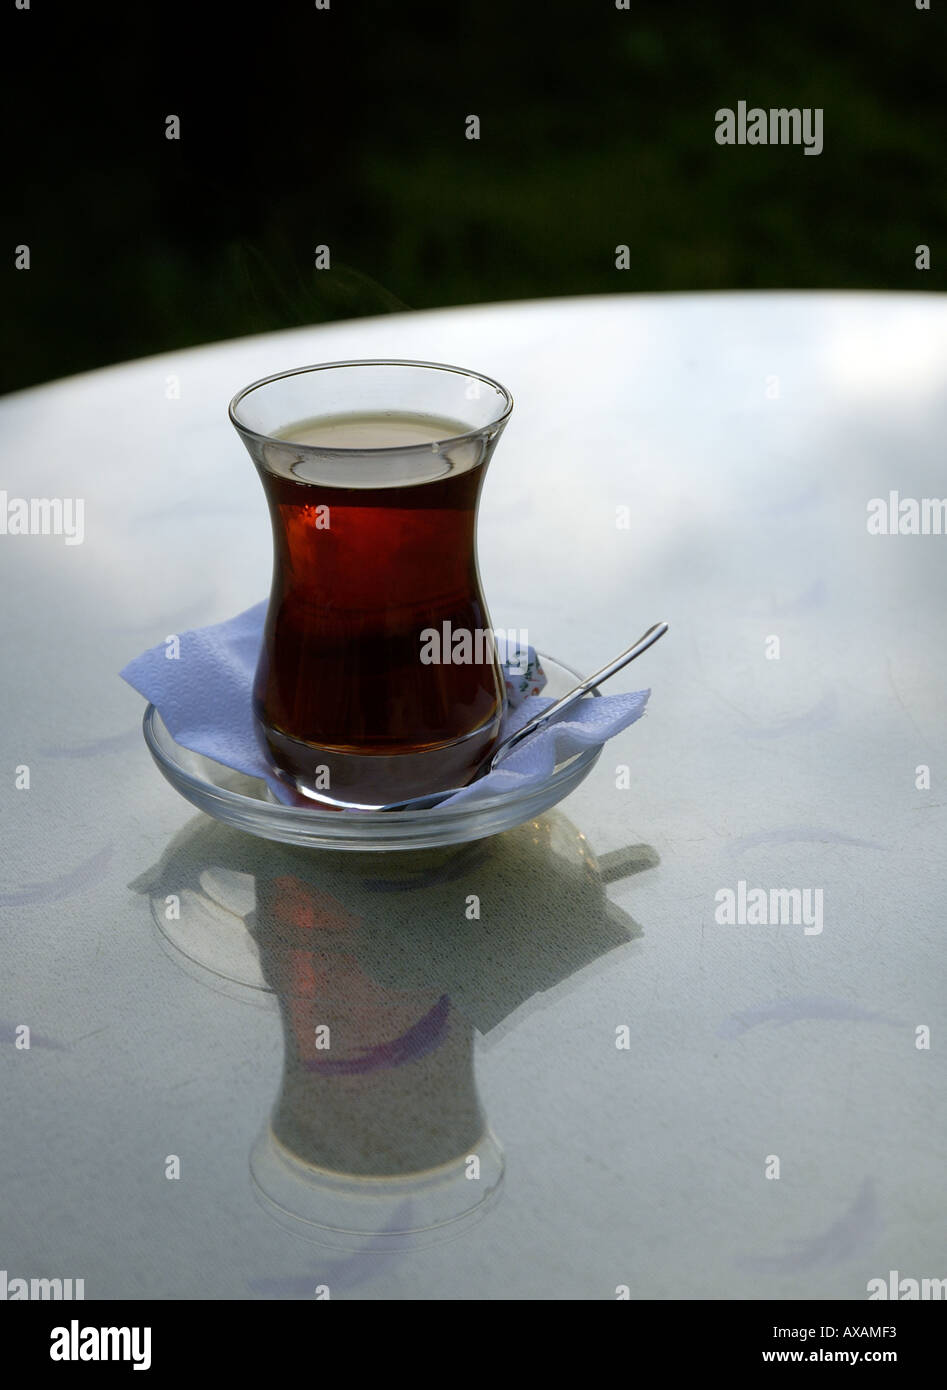 NMB74376 thé turc dans le verre de la plaque sur la table à Istanbul Turquie Banque D'Images